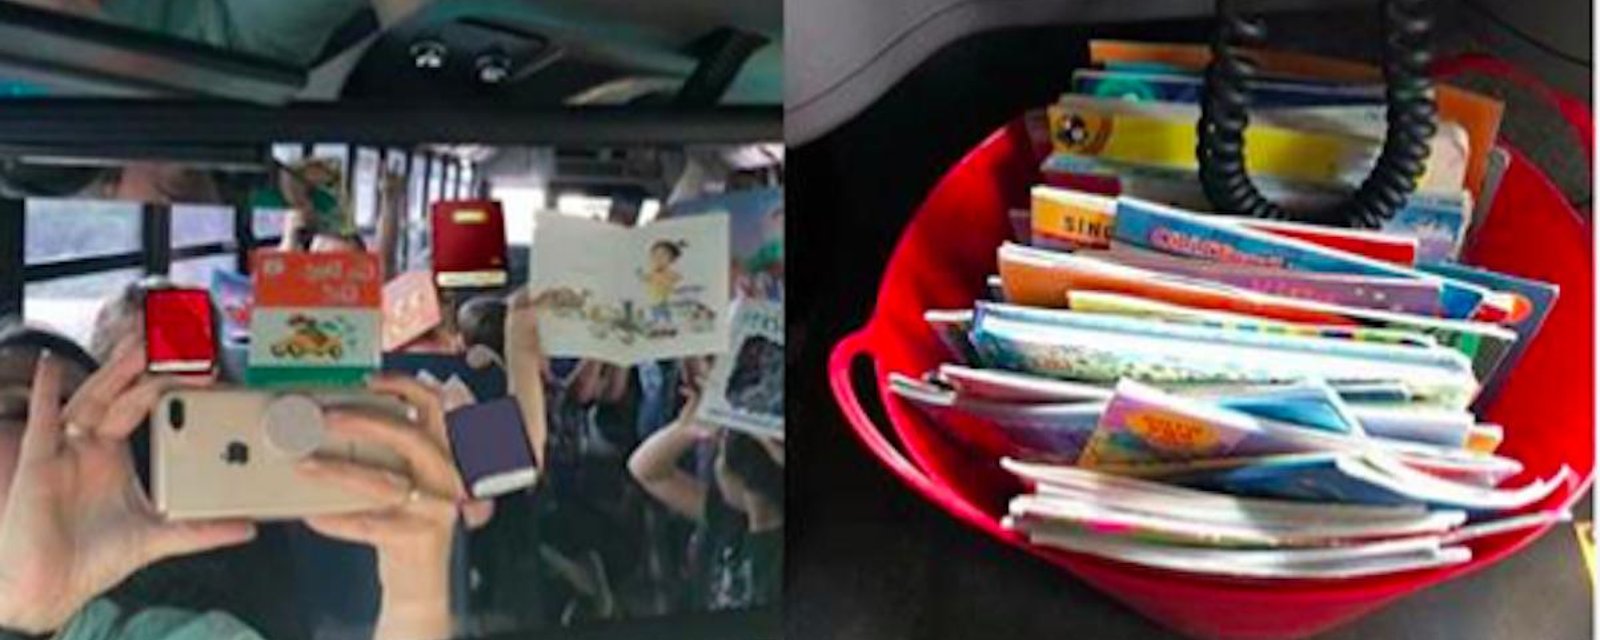 Une chauffeuse d’autobus scolaire a trouvé une bonne façon d’encourager les enfants à lire des livres